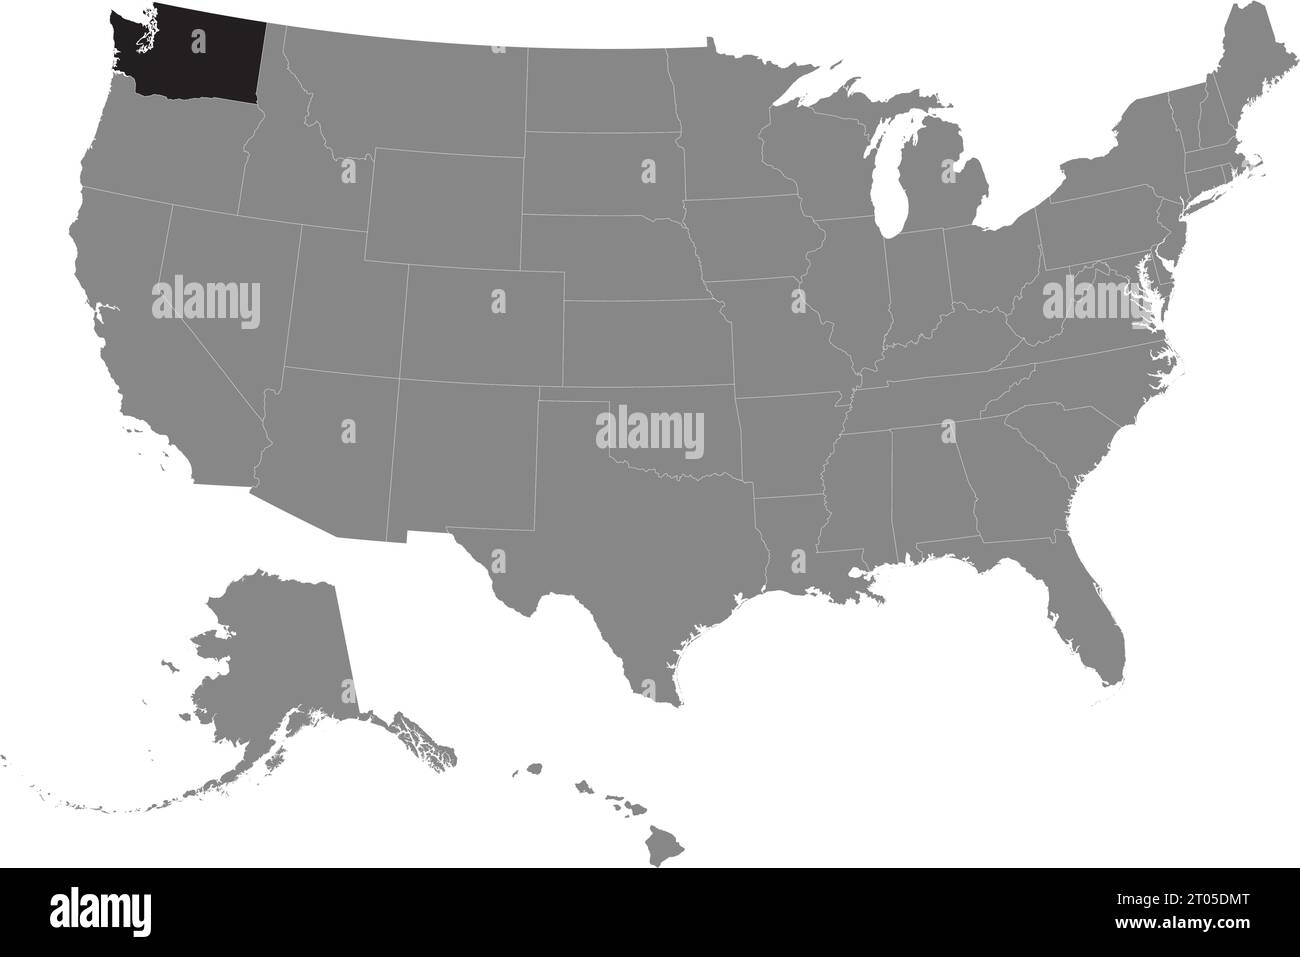 Schwarze CMYK-Bundeskarte von WASHINGTON in detaillierter grauer, leerer politischer Karte der Vereinigten Staaten von Amerika auf transparentem Hintergrund Stock Vektor